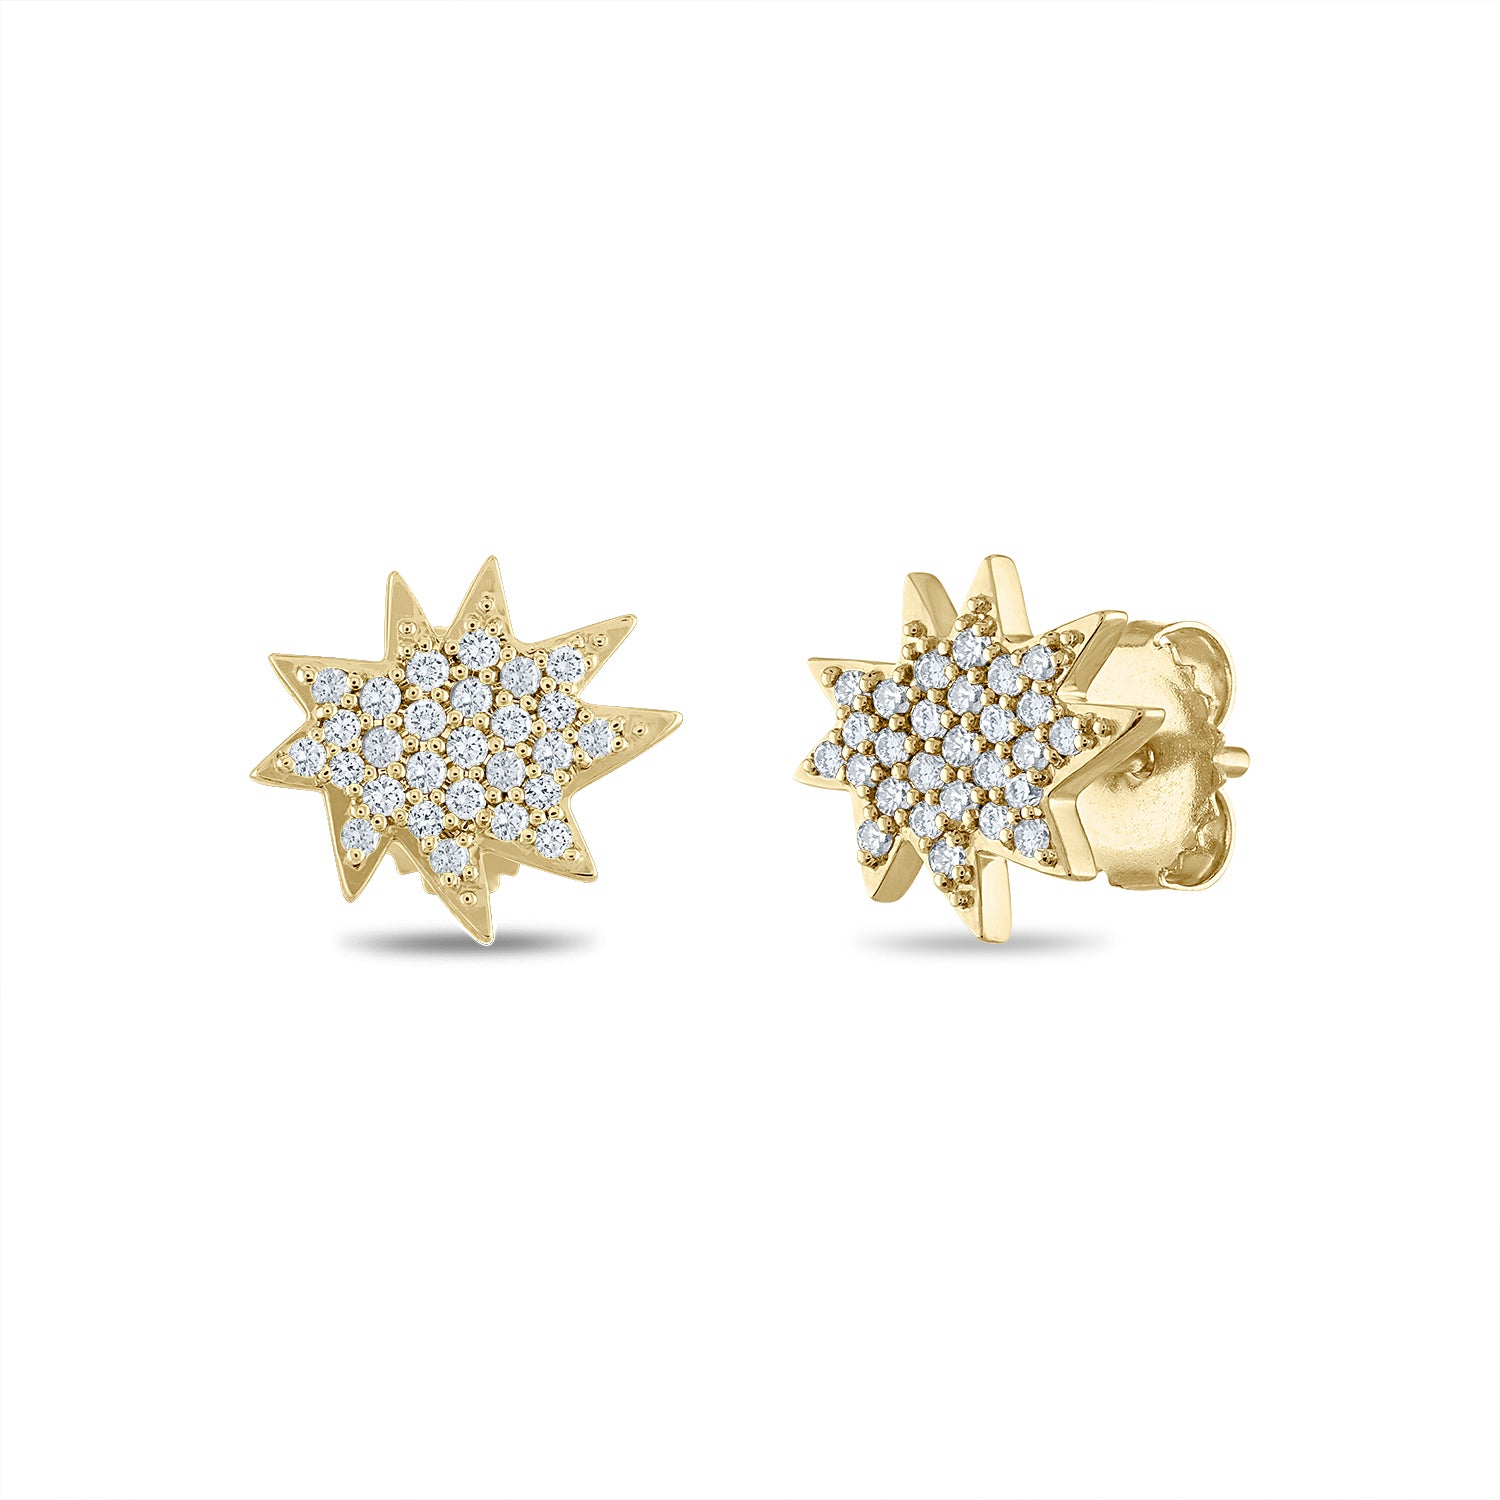 Share more than 232 gold earrings for girls design best